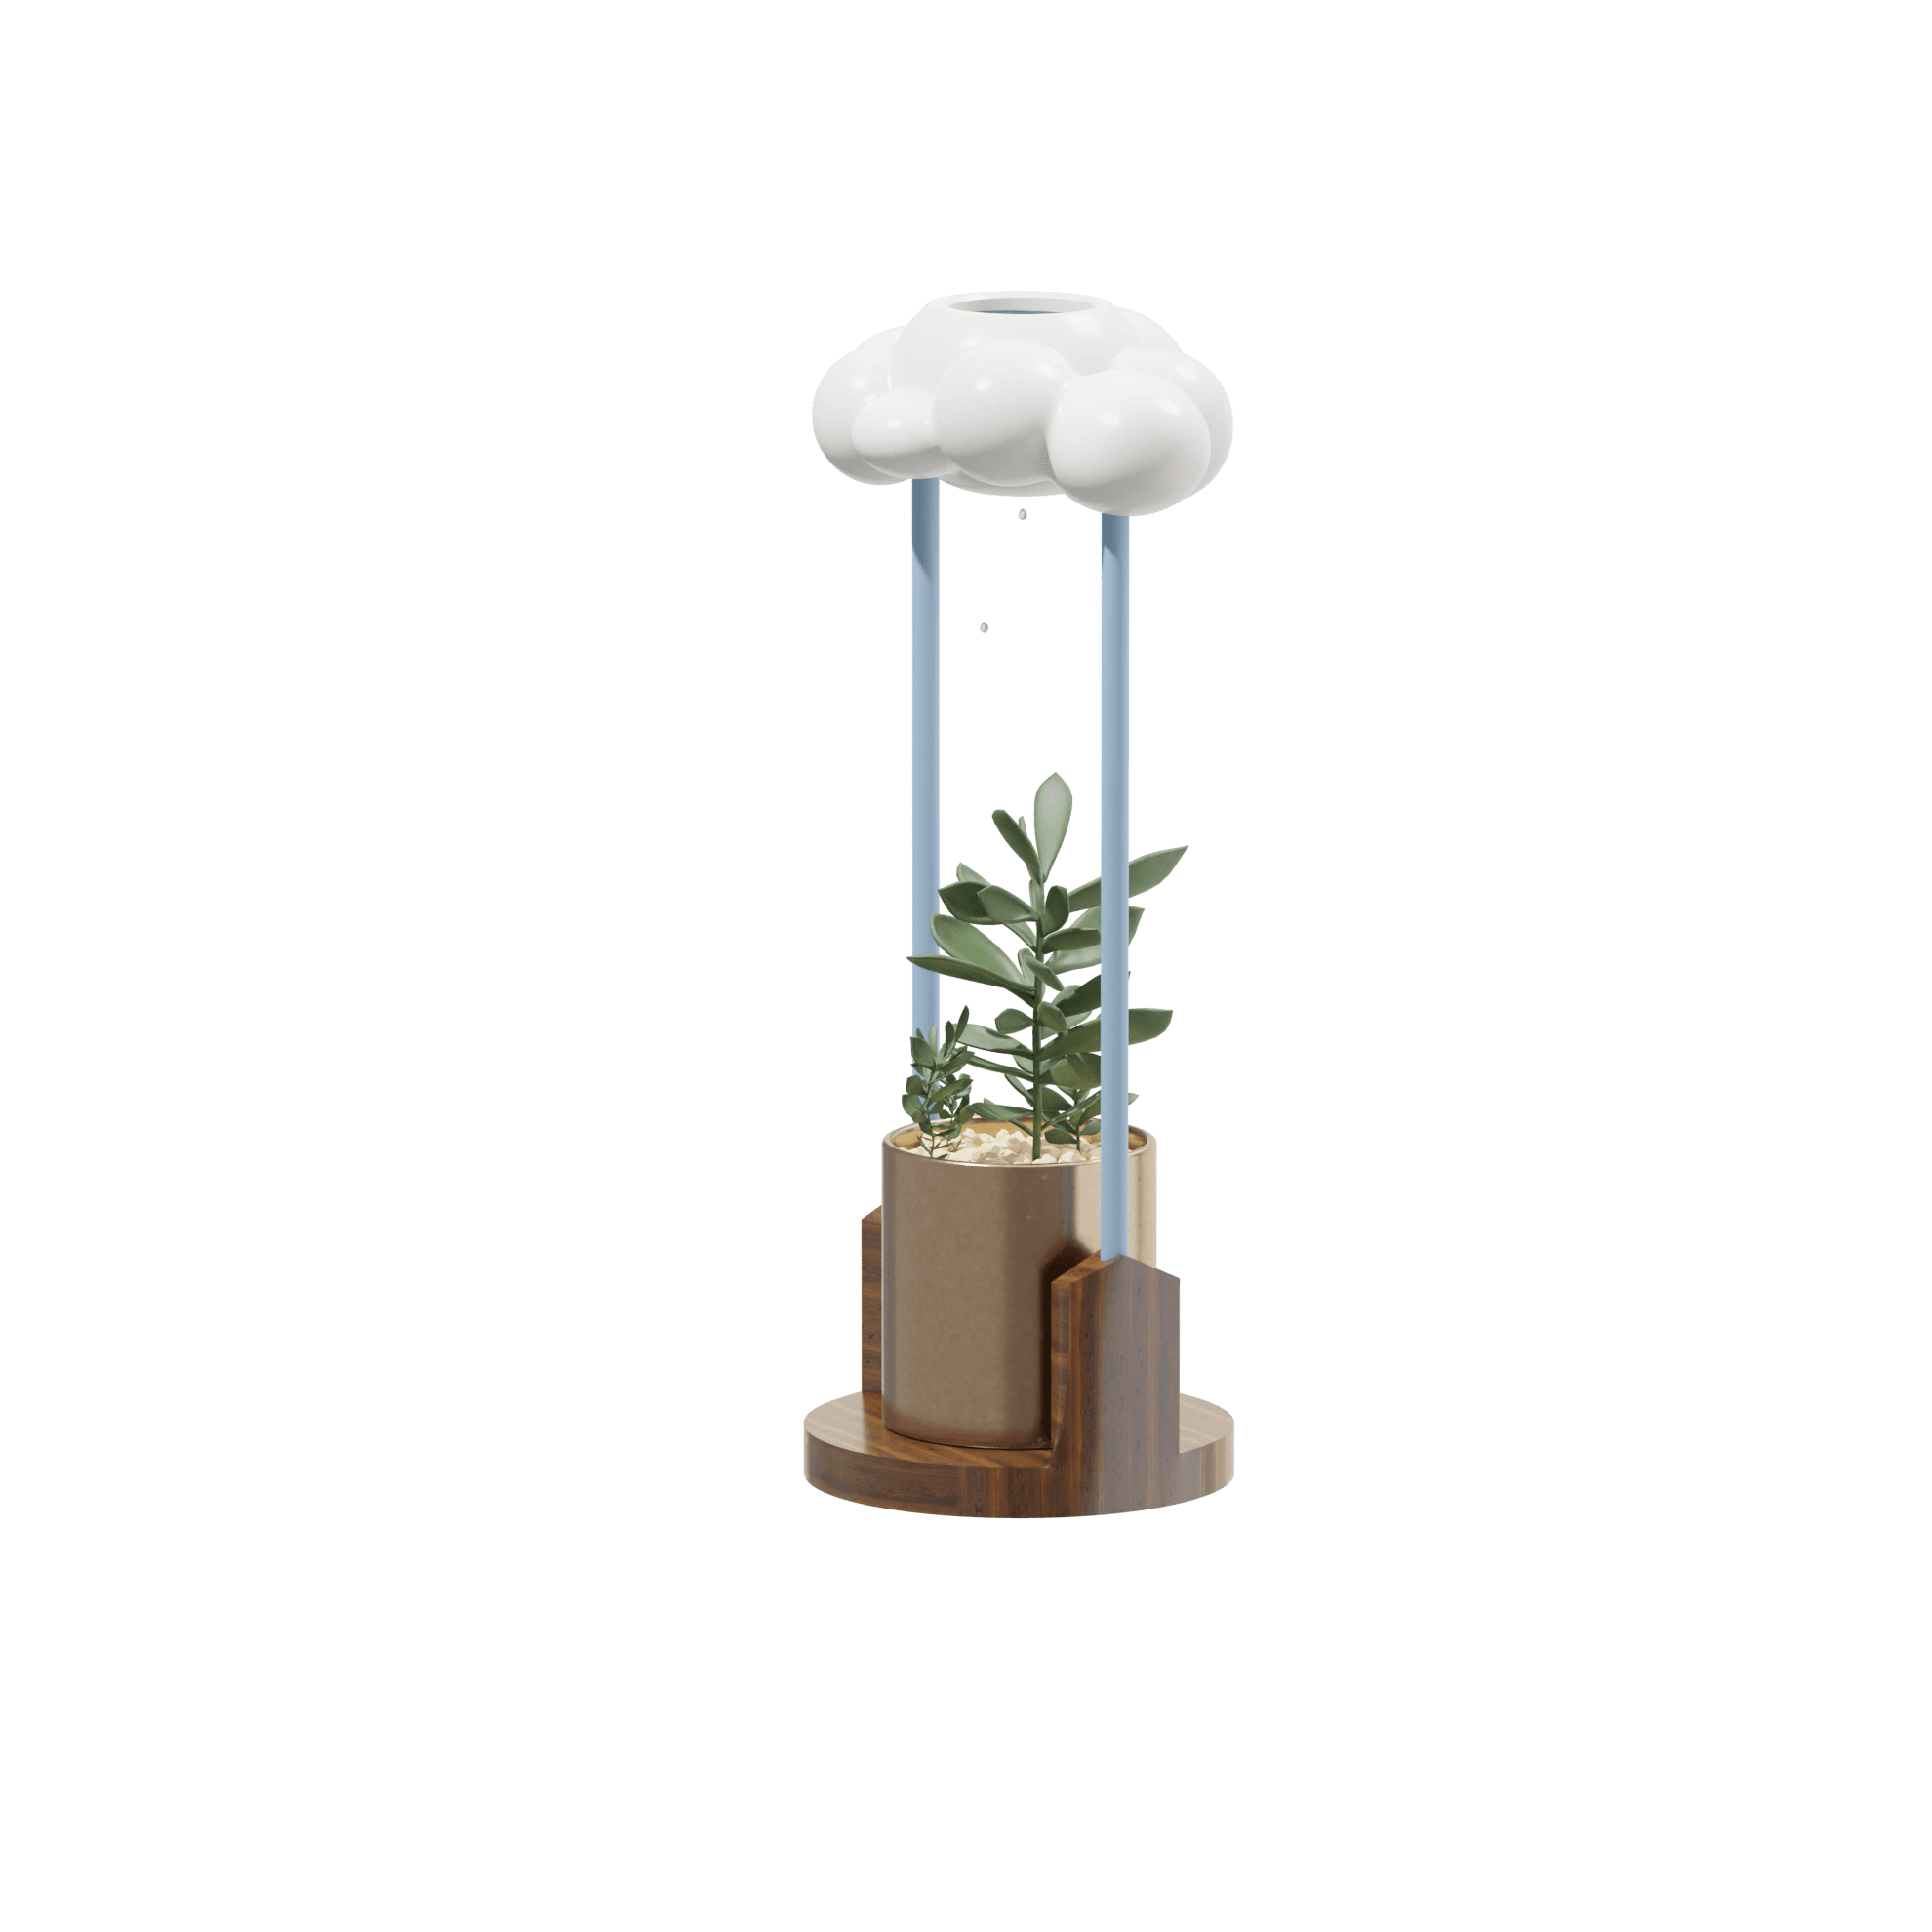 Rain Cloud Pot 3d model